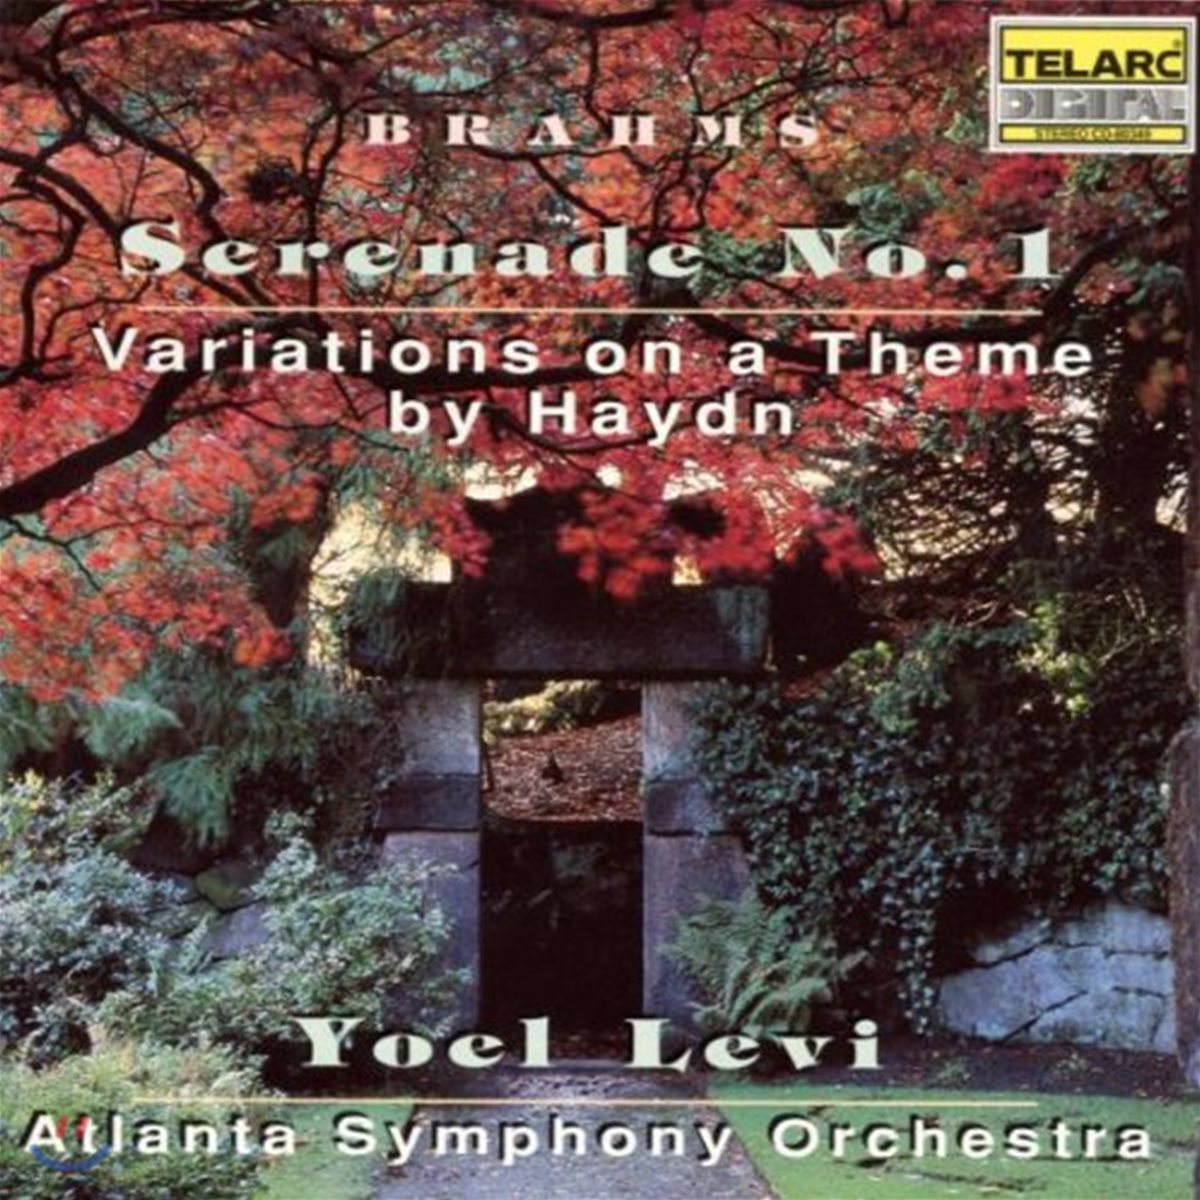 Yoel Levi 브람스: 세레나데 1번, 하이든 변주곡 - 요옐 레비, 애틀란타 교향악단 (Brahms: Serenade No.1, Haydn Variations Op.56a)